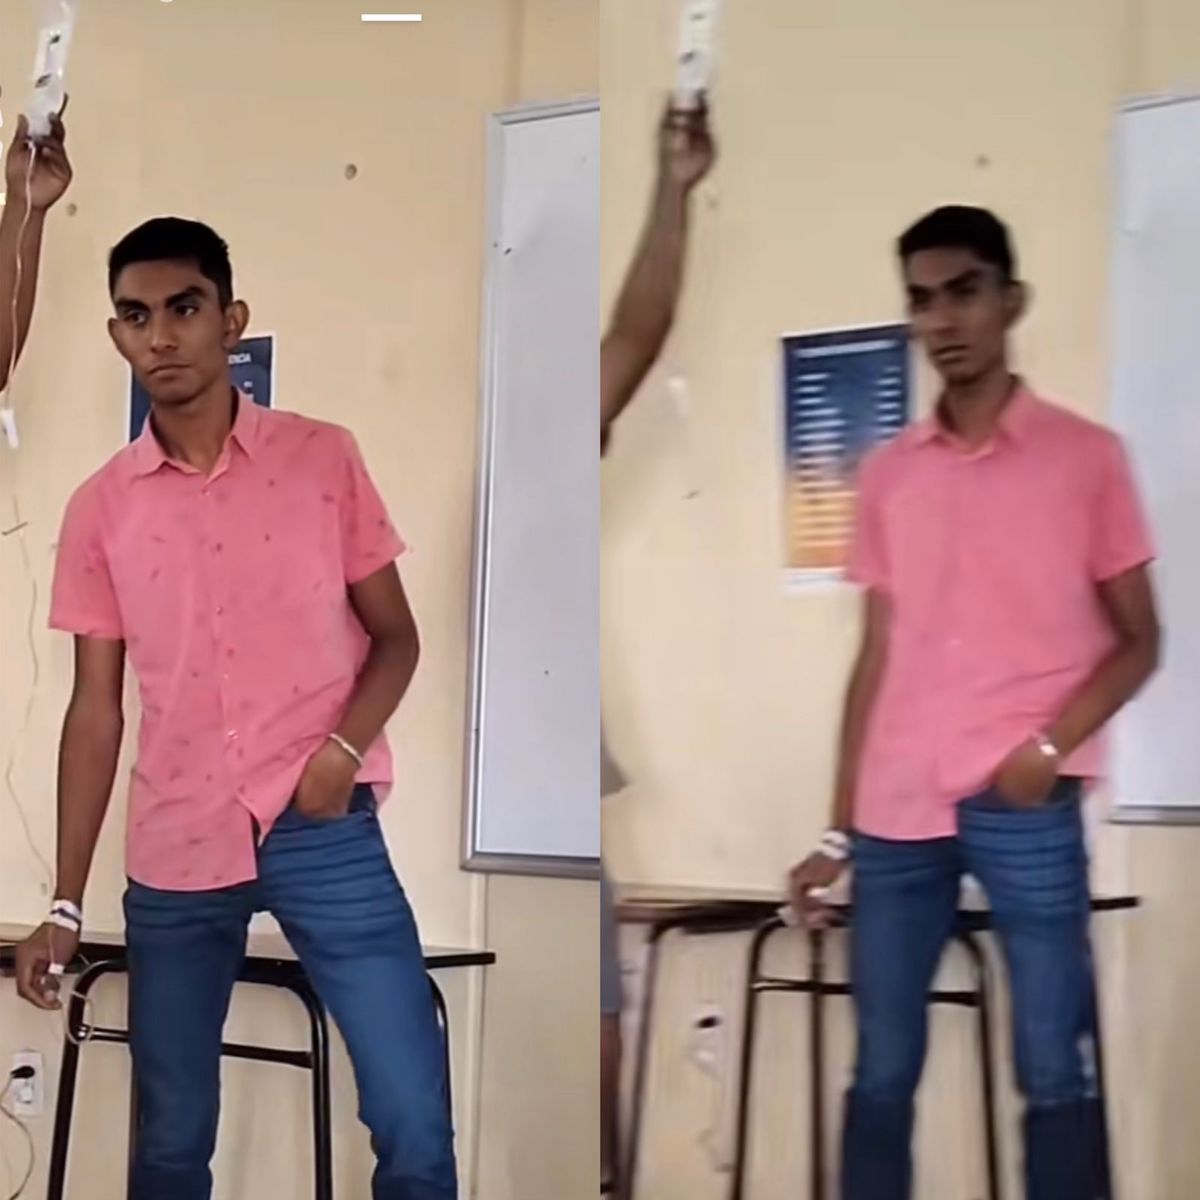 Un video de TikTok se hizo viral porque aparece un joven exponiendo en un aula de clases, pero está conectado a una bolsa de suero: detalles de la historia